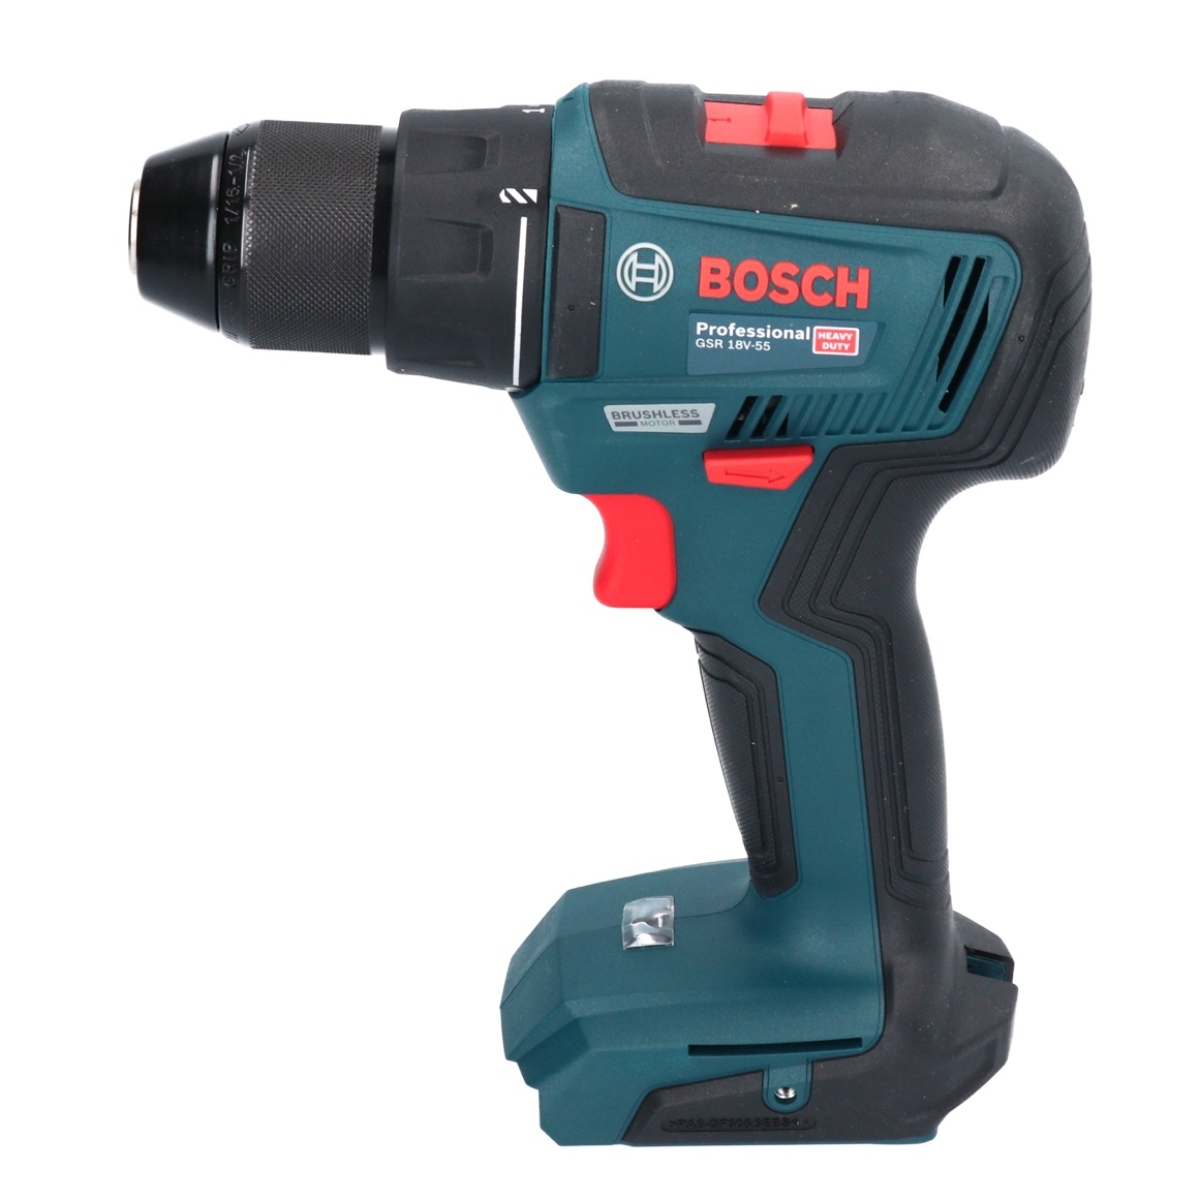 Bosch GSR 18V-55 Perceuse-visseuse sans fil Professional 18 V 55 Nm brushless + 1x Batterie 2,0 Ah - sans chargeur